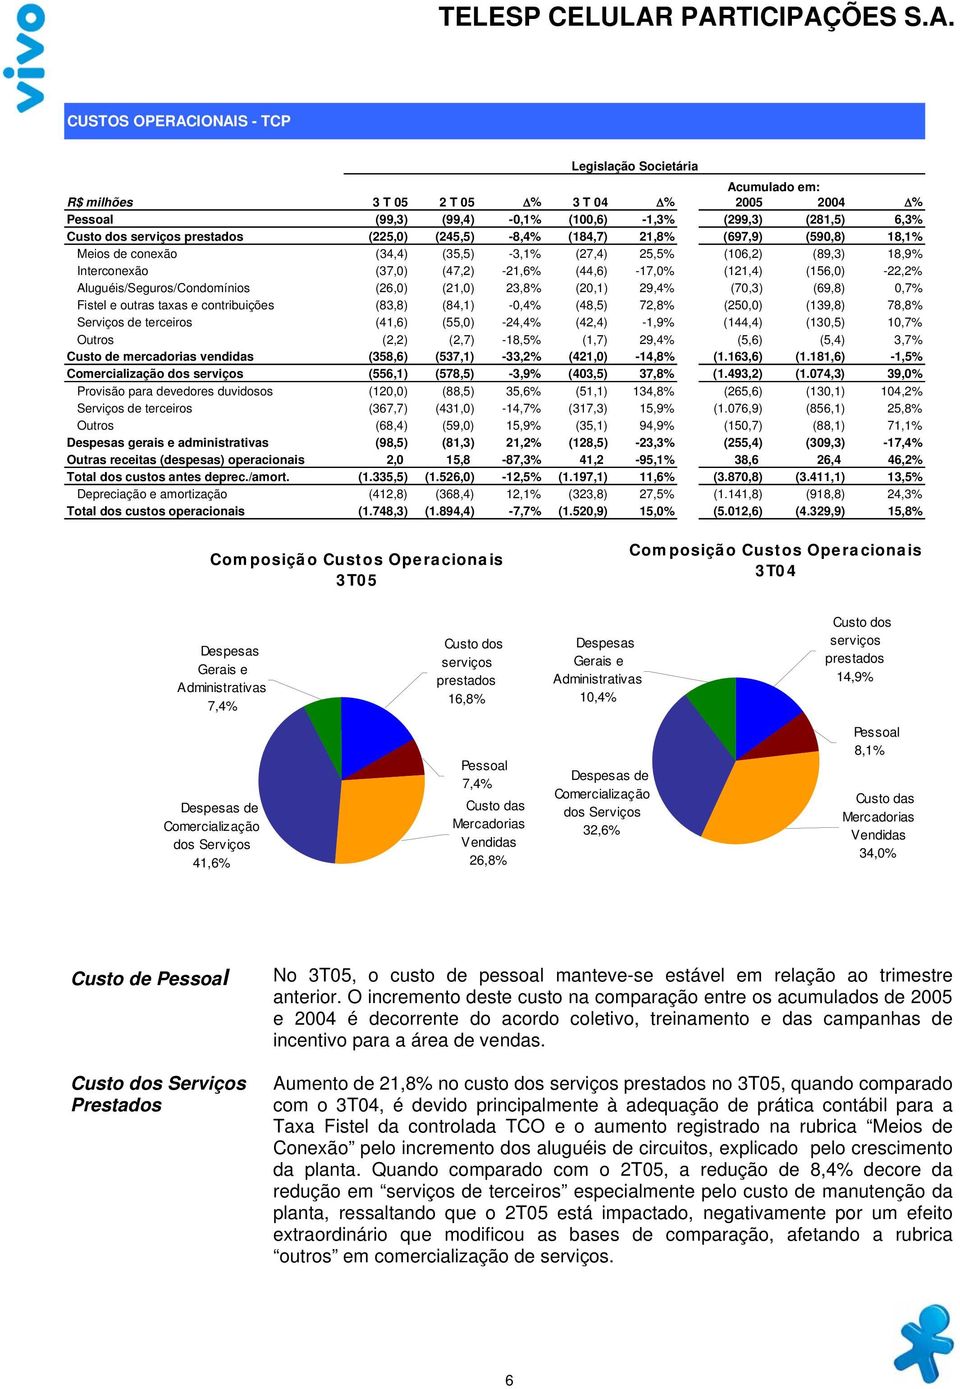 (156,0) -22,2% Aluguéis/Seguros/Condomínios (26,0) (21,0) 23,8% (20,1) 29,4% (70,3) (69,8) 0,7% Fistel e outras taxas e contribuições (83,8) (84,1) -0,4% (48,5) 72,8% (250,0) (139,8) 78,8% Serviços